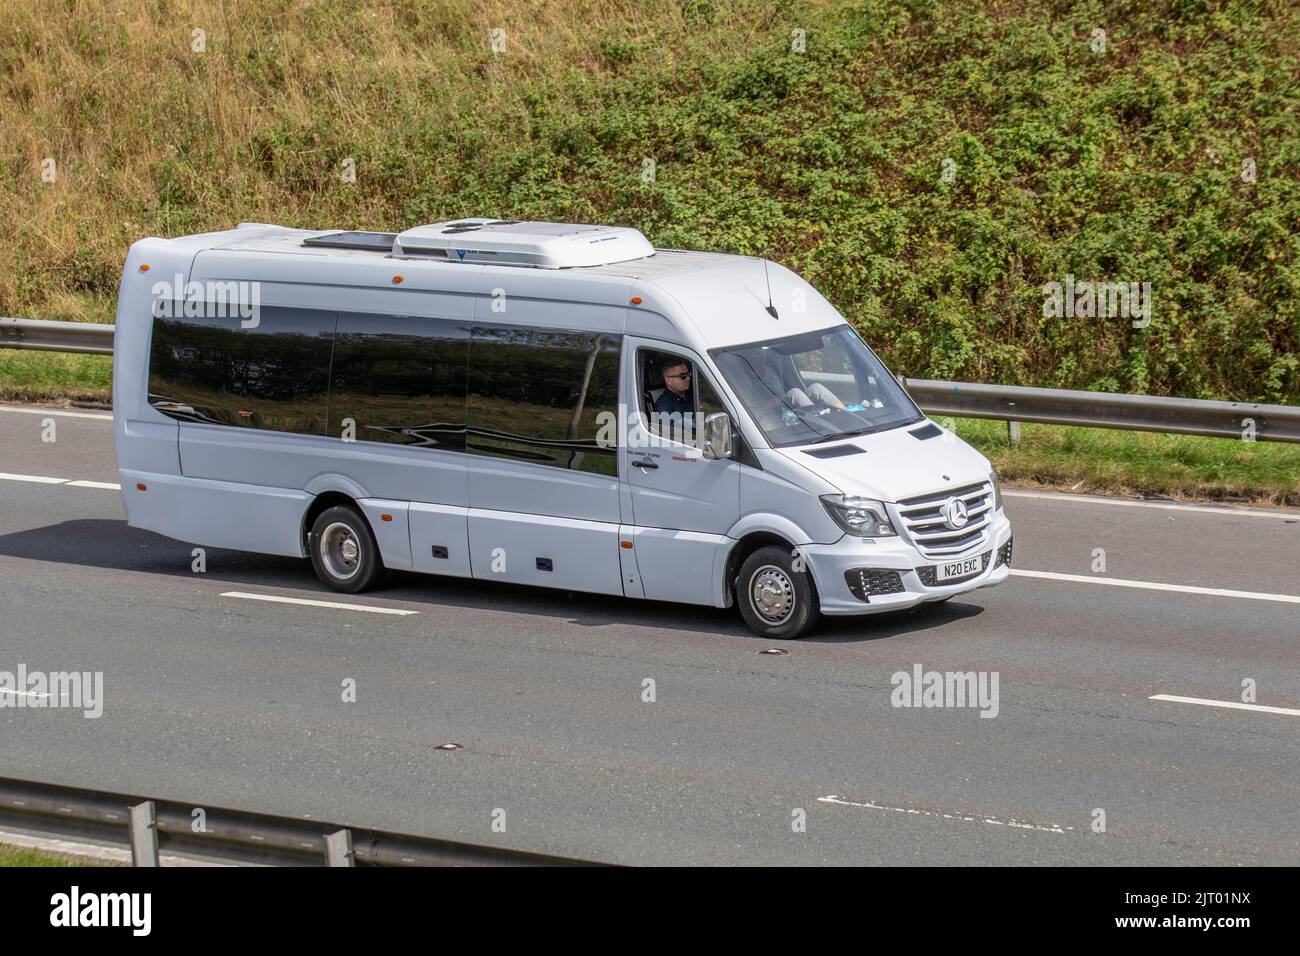 2014 Mercedes Benz Sprinter 516 CDI Executive Mini-bus Voyage. 2.1CDi 51, location de bus urbains, minibus de luxe, minibus 16 places, voyager sur l'autoroute M61, Royaume-Uni ; voyager sur l'autoroute M6, Royaume-Uni Banque D'Images